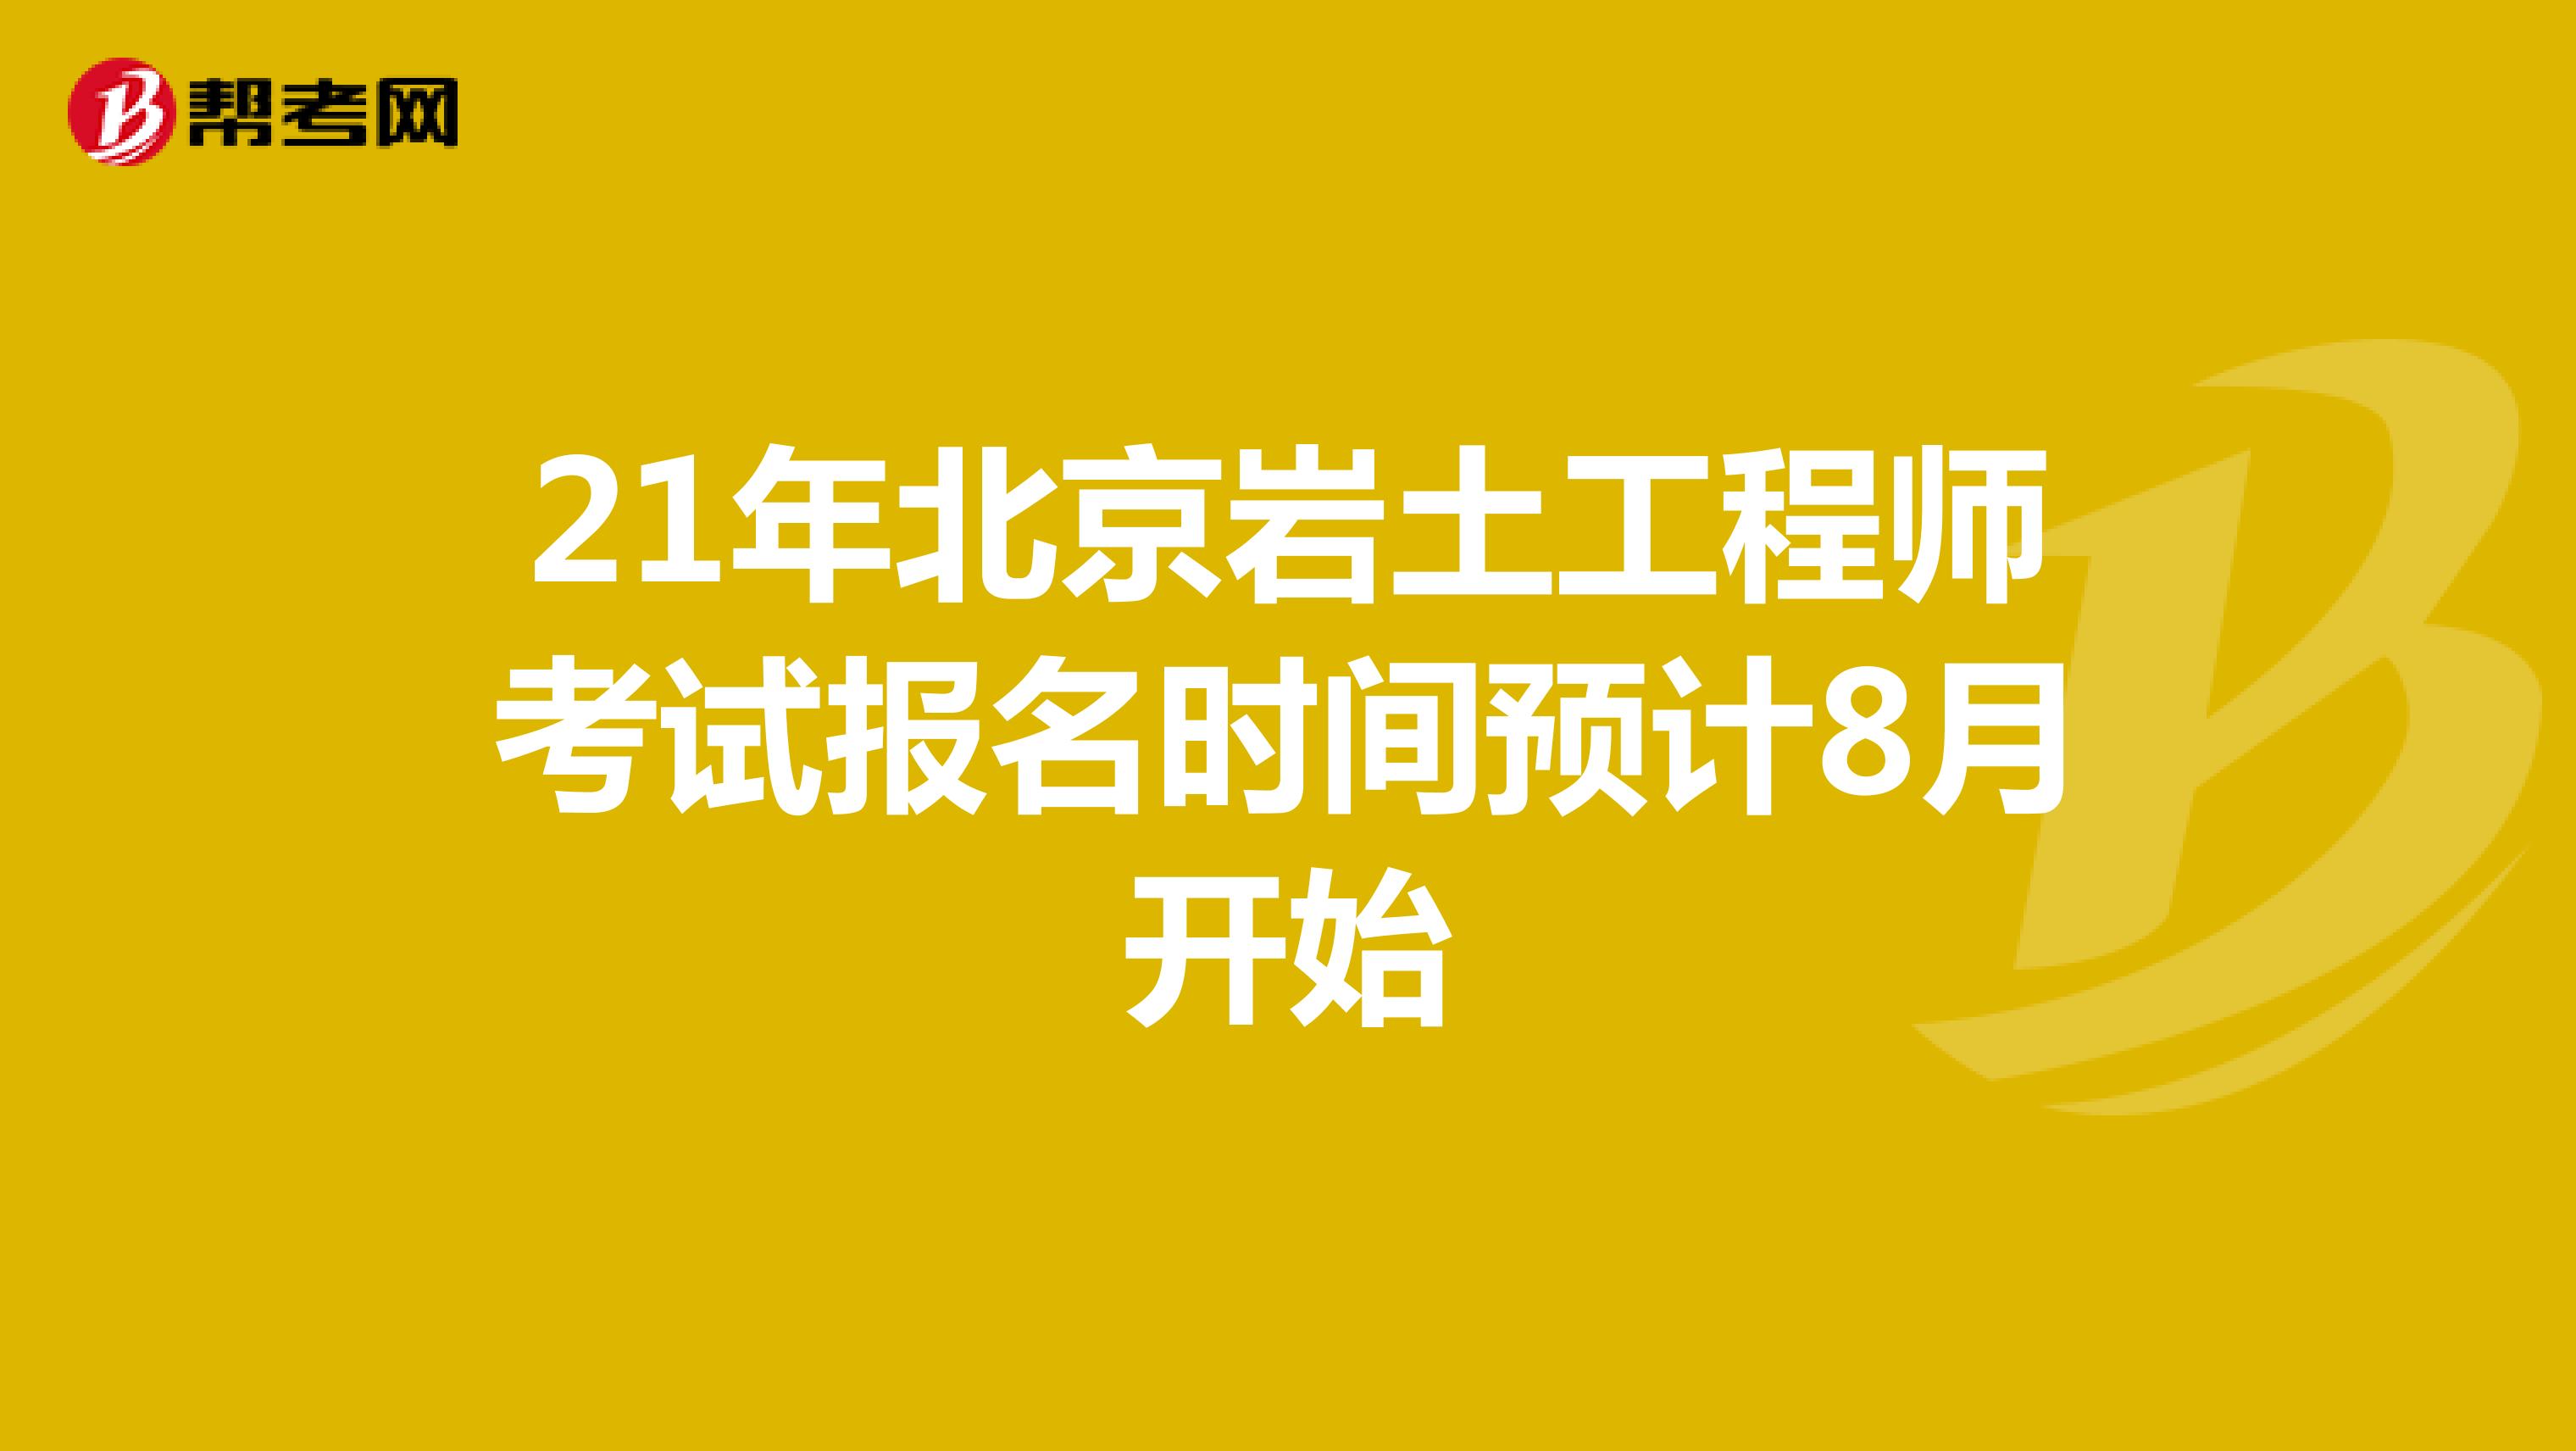 21年北京岩土工程师考试报名时间预计8月开始